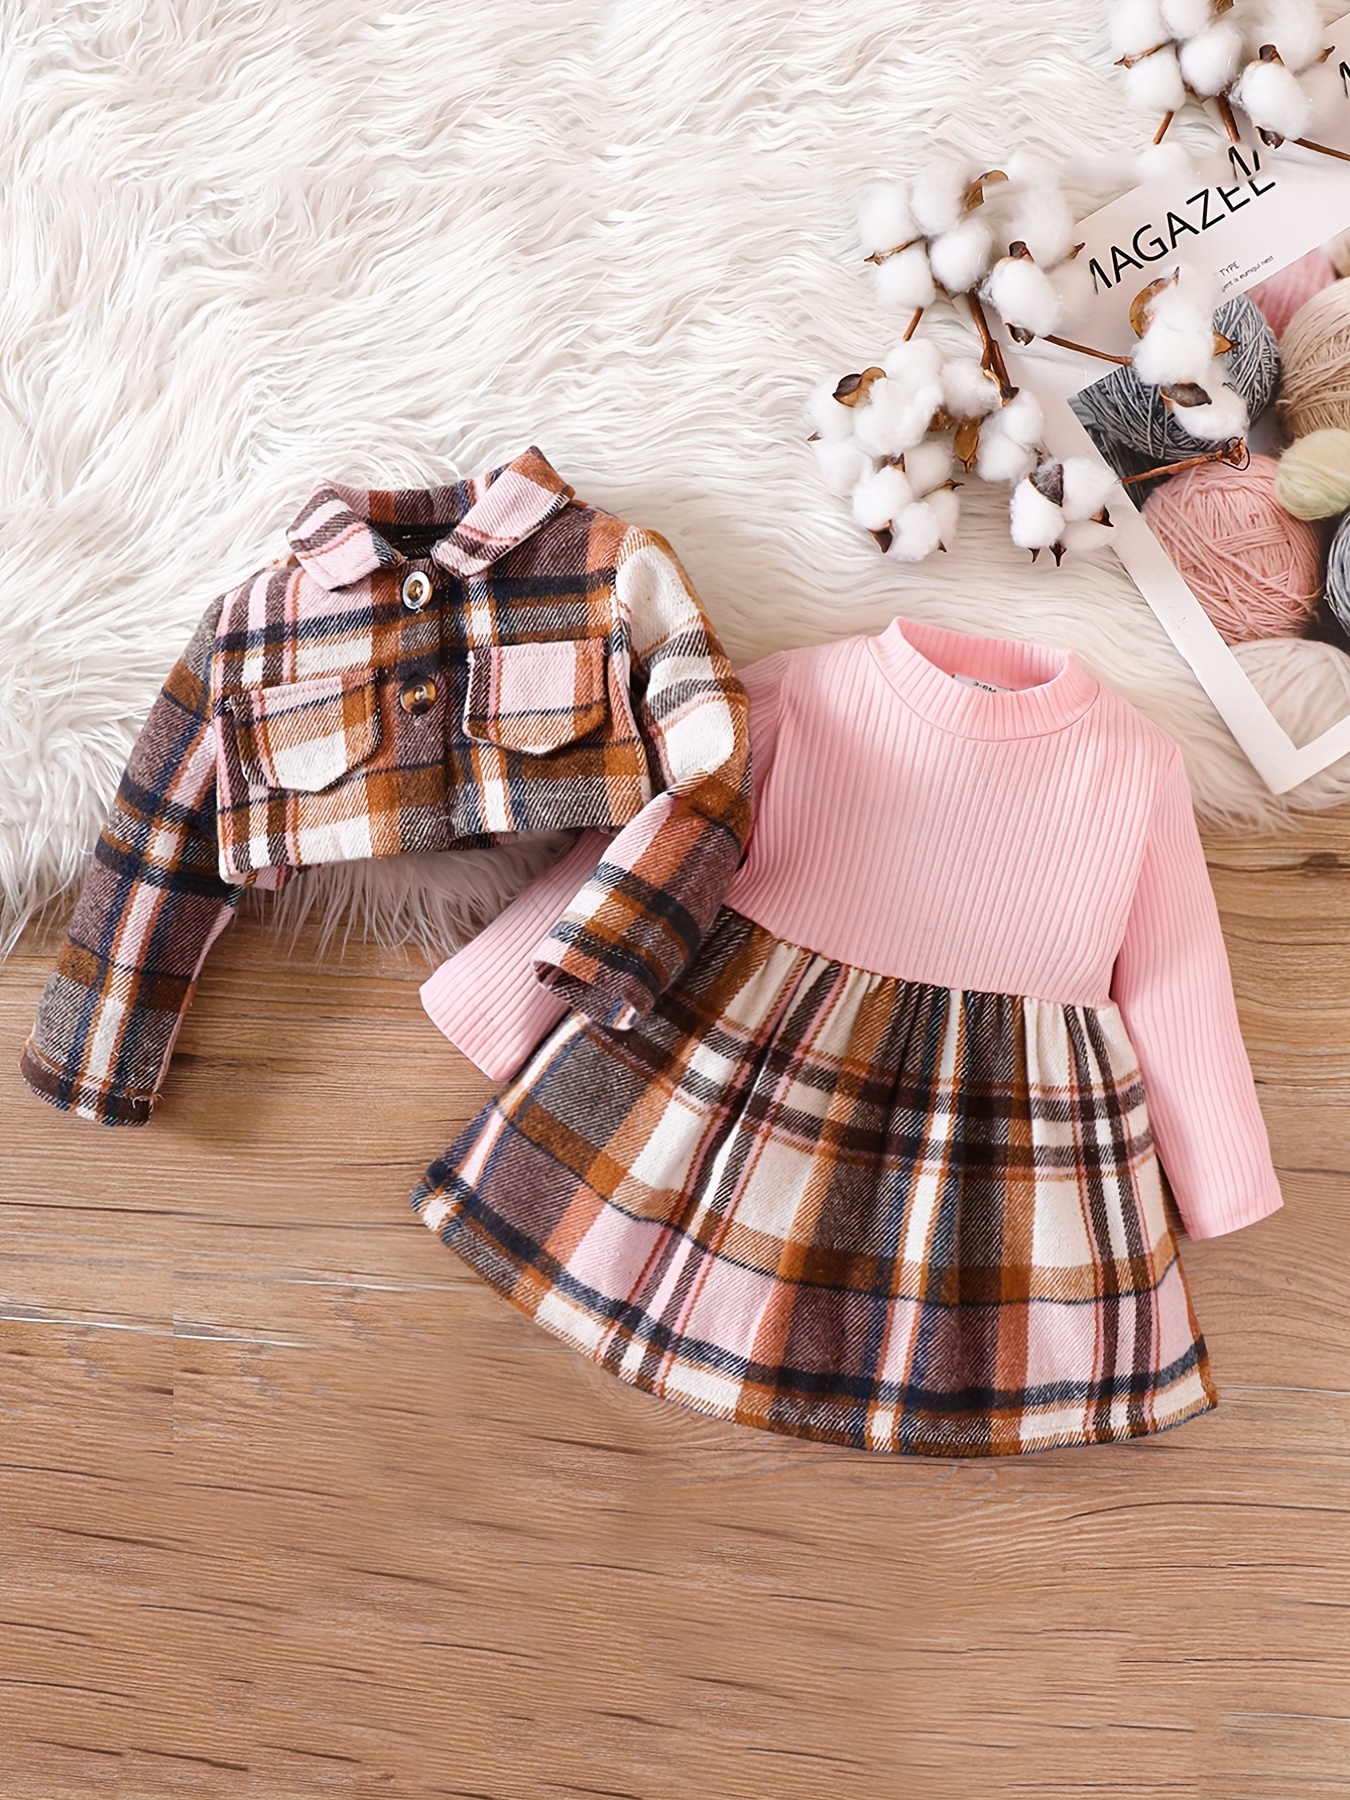 Best Little Girls Winter Outfits, Cute Skirt Sets